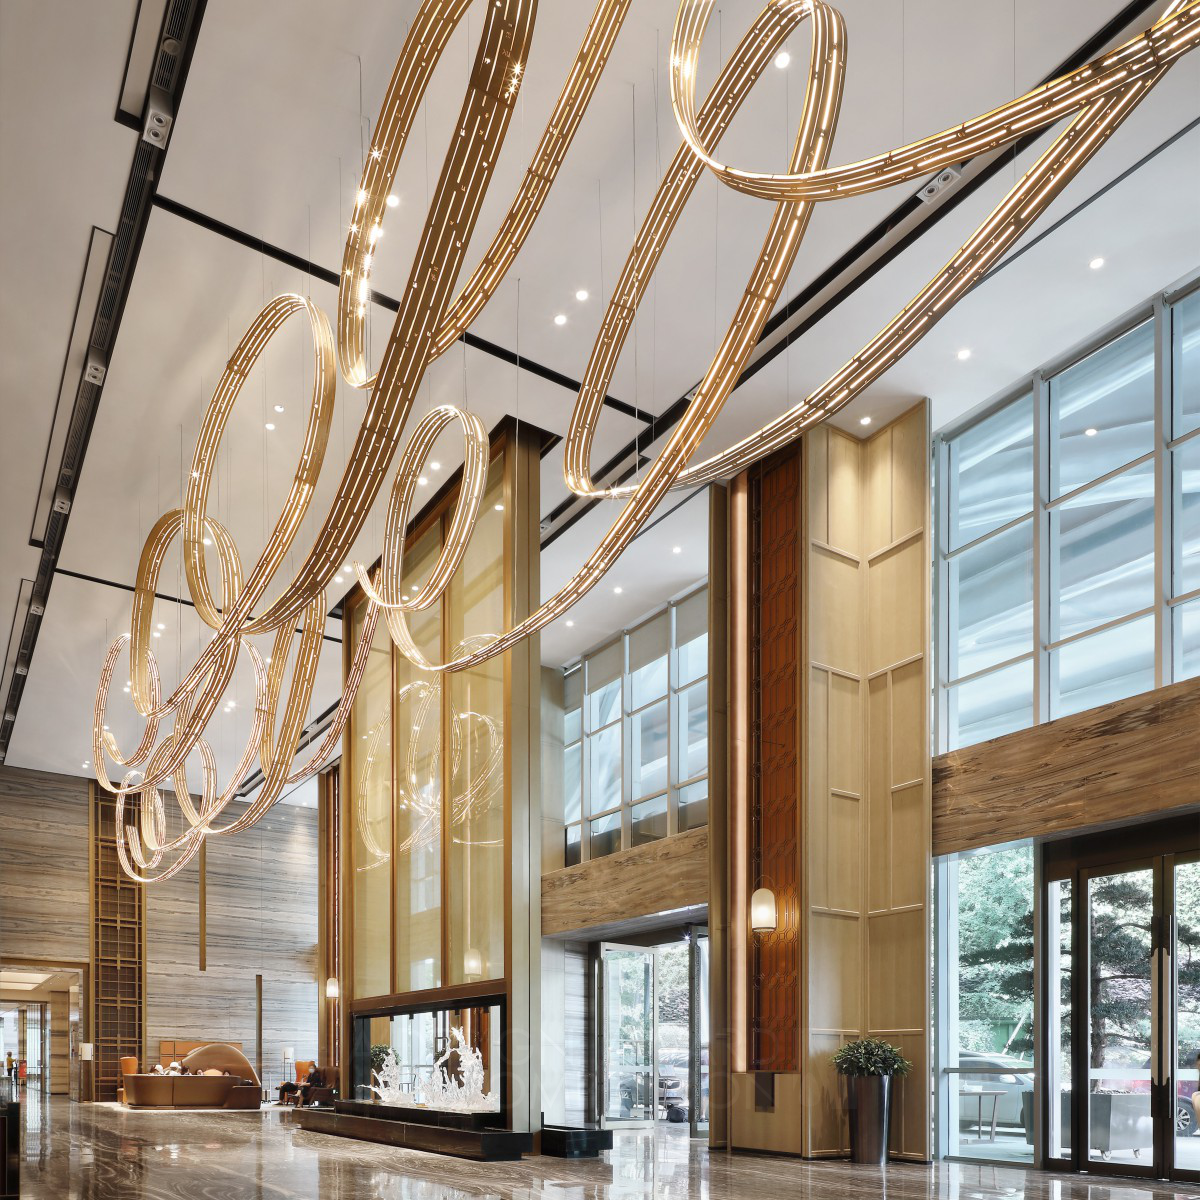 शेराटन कुनमिंग: लुओ दान द्वारा डिजाइन की गई एक प्रीमियम पांच सितारा होटल